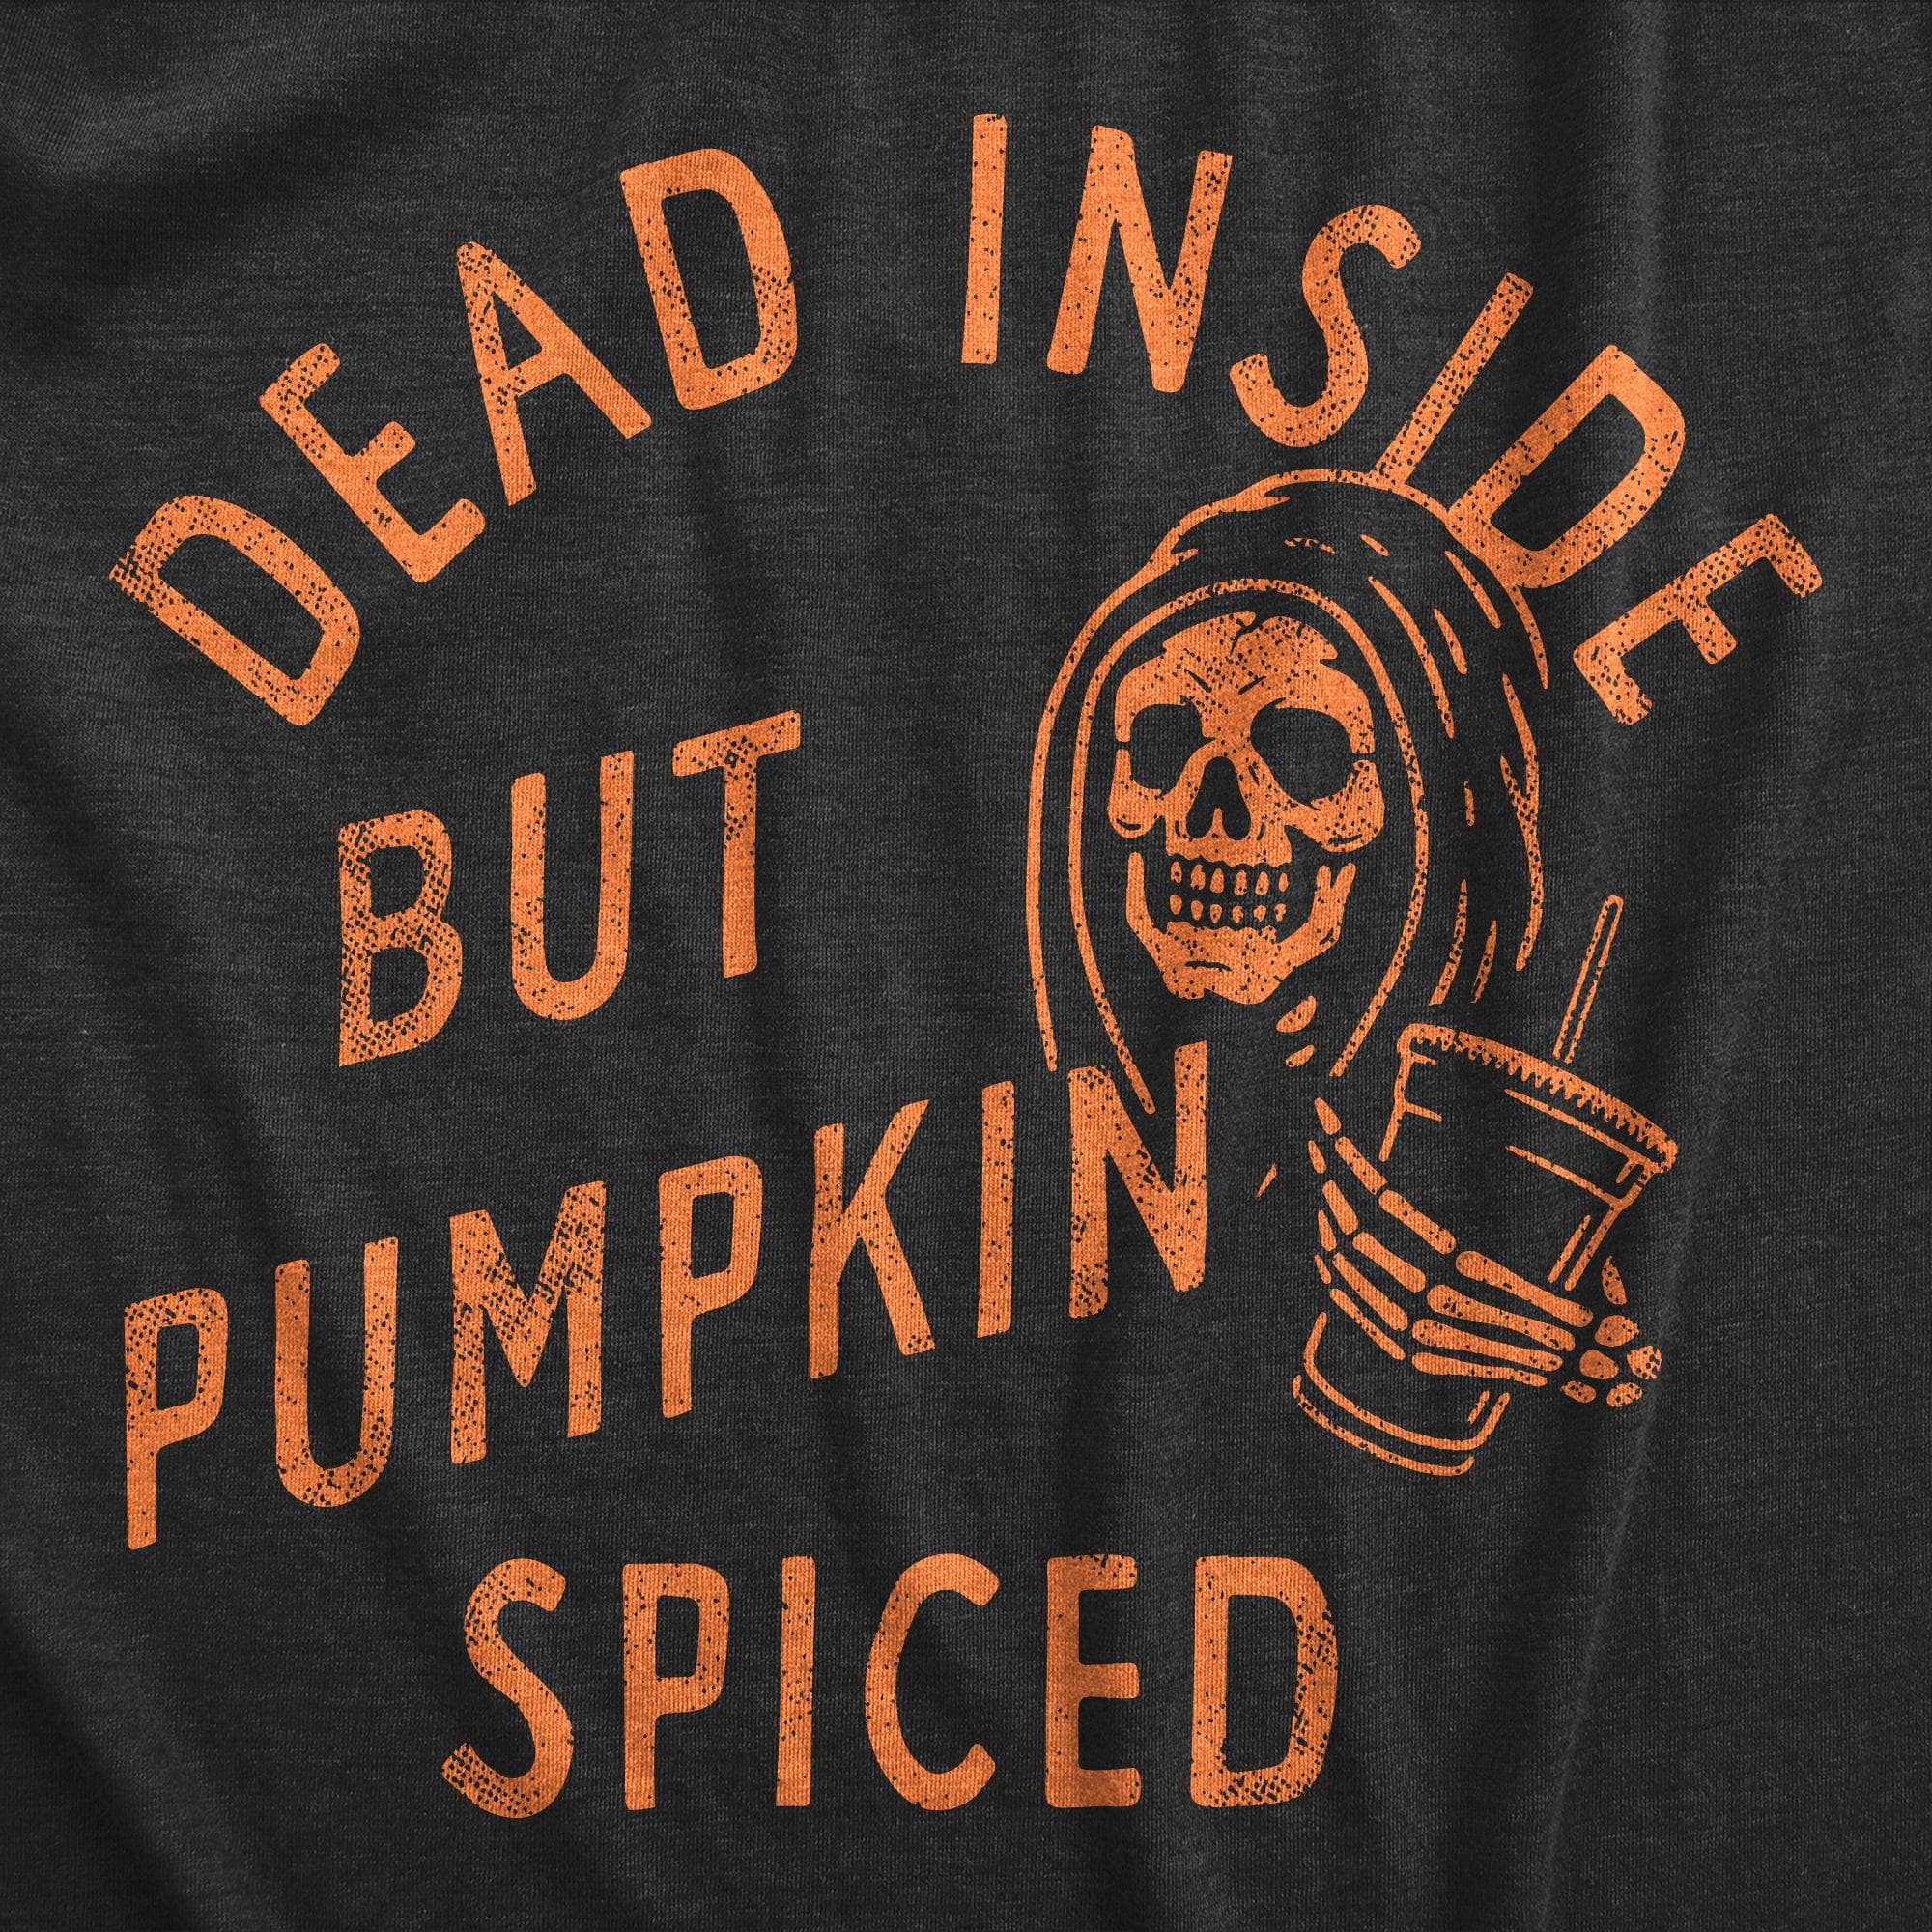 Dead Inside But Pumpkin Spiced Men's Tshirt  -  Crazy Dog T-Shirts